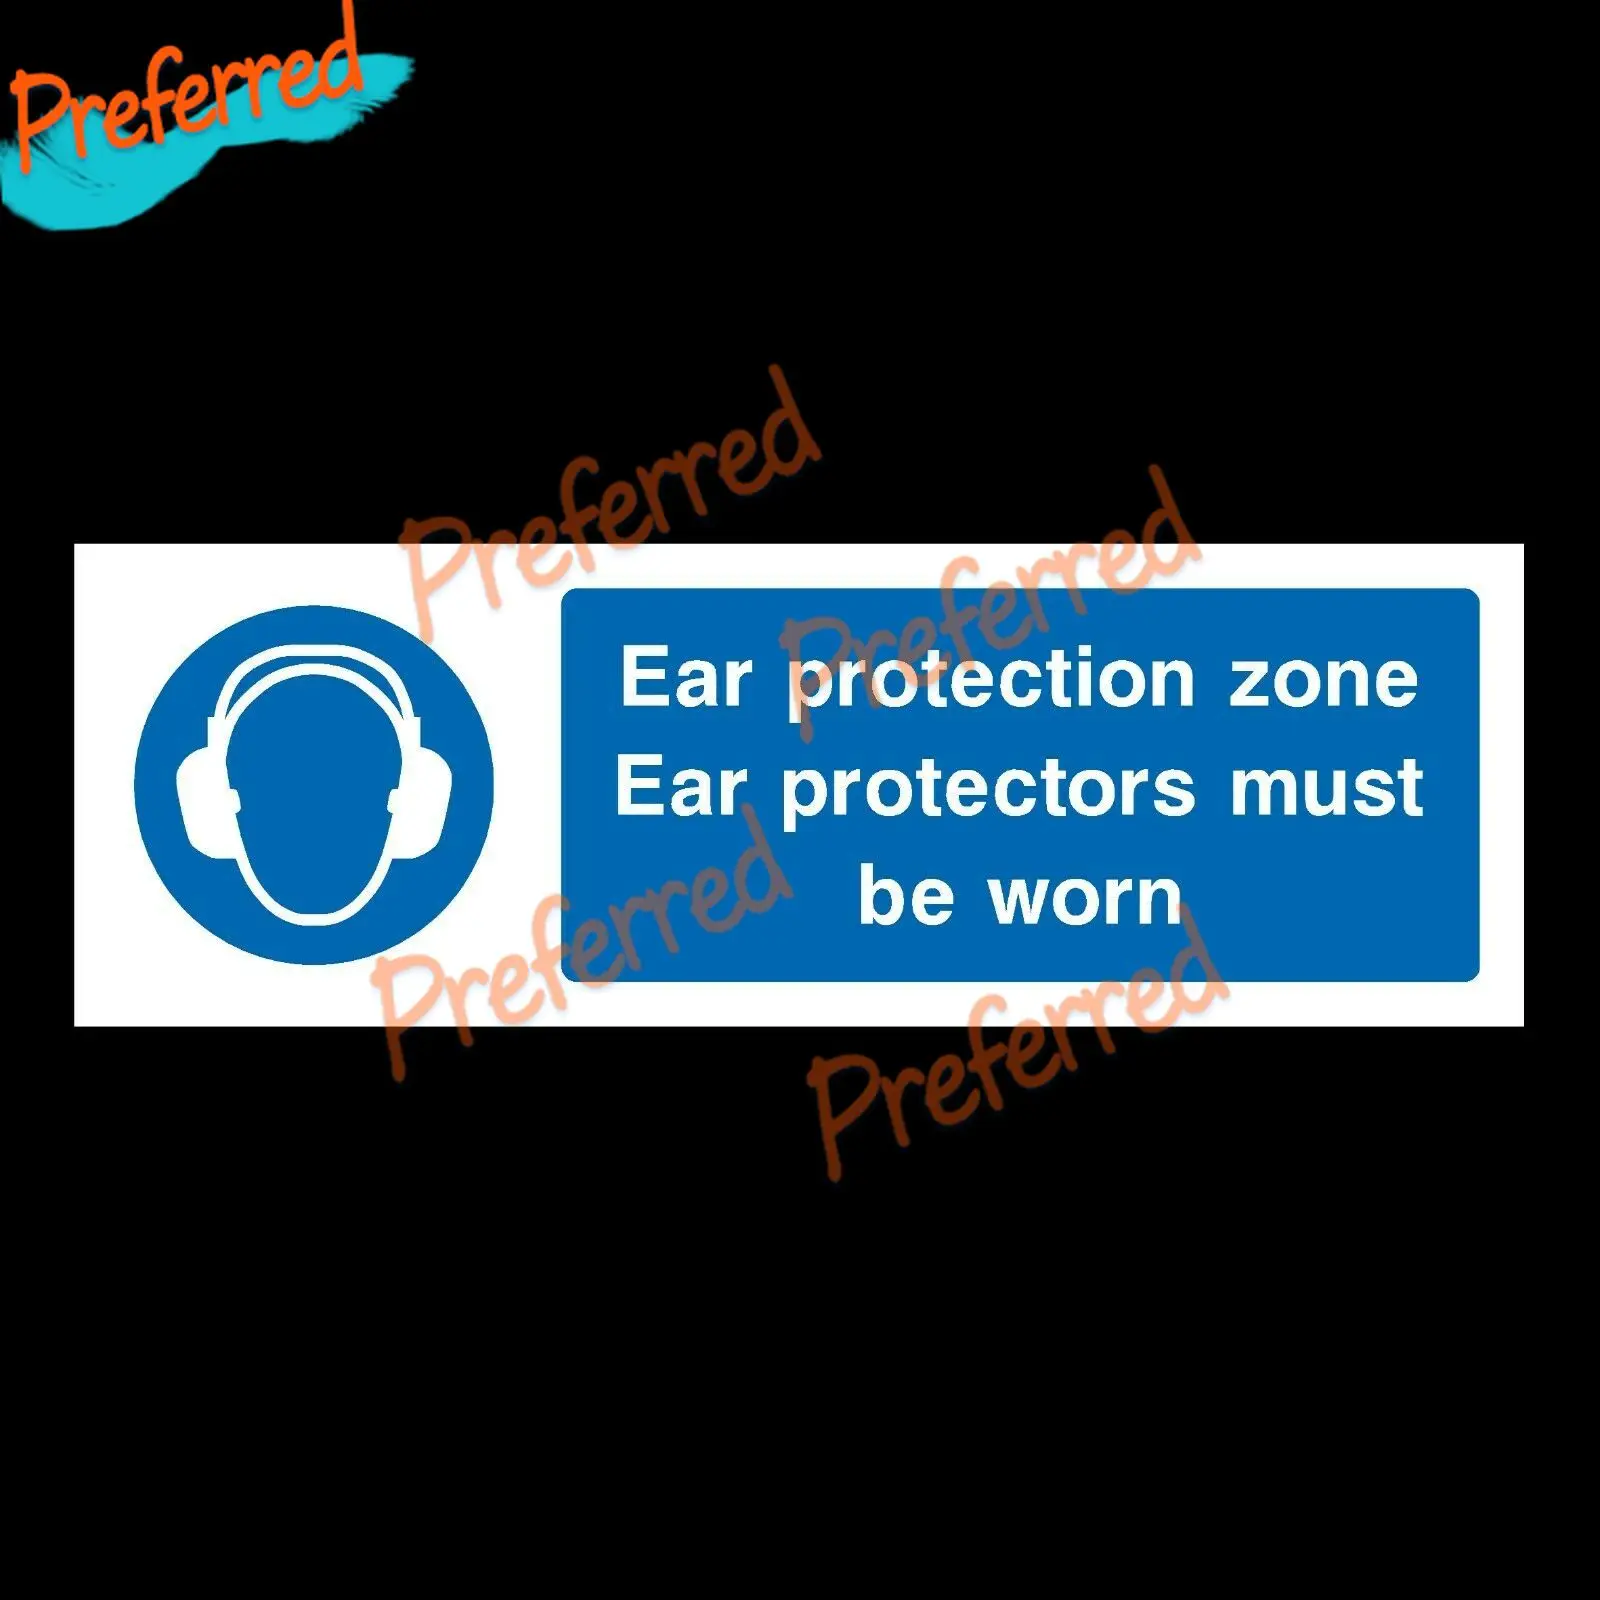 

Пластиковый знак или наклейка для защиты ушей 300x10 0 мм KK, виниловый чехол с защитой от царапин, водонепроницаемый ПВХ, все размеры в наличии